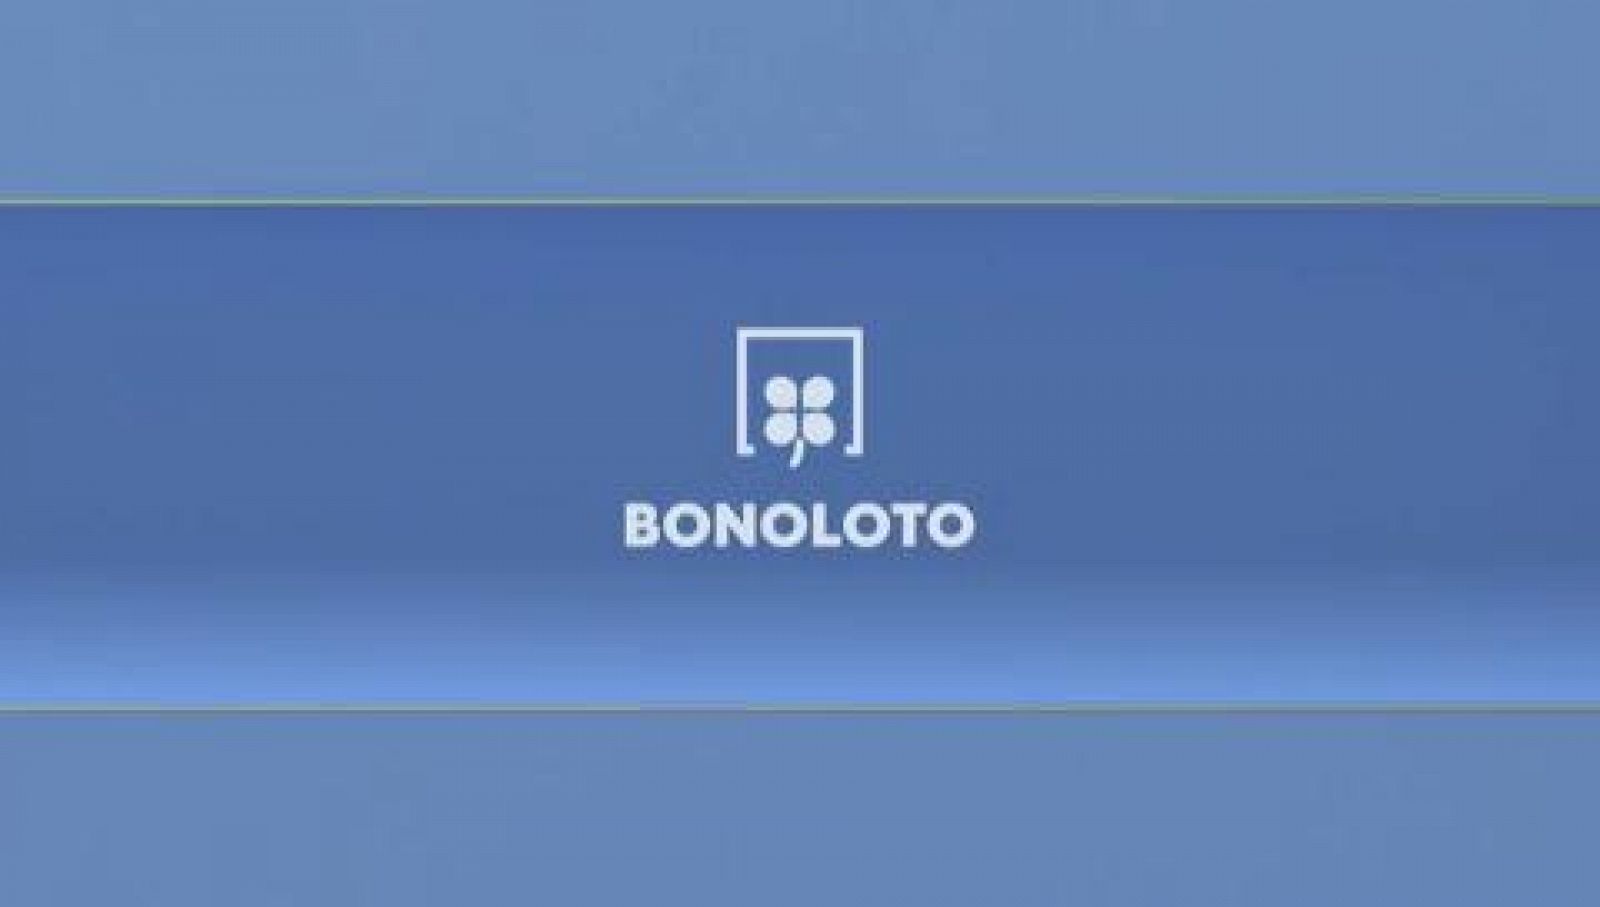 Bonoloto - 23/11/2020 - RTVE.es